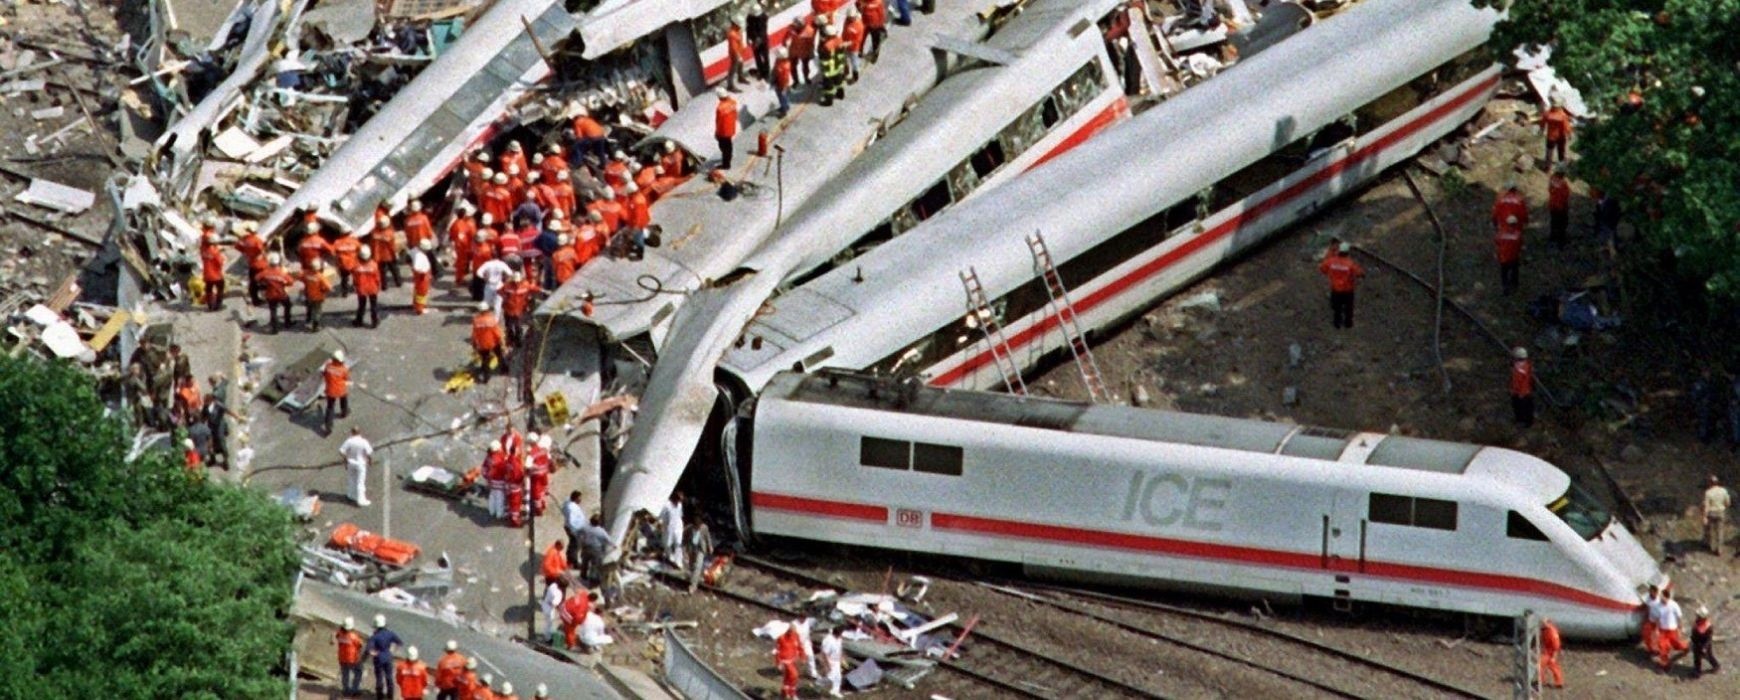 Τα δέκα χειρότερα σιδηροδρομικά δυστυχήματα στον κόσμο (Videos)